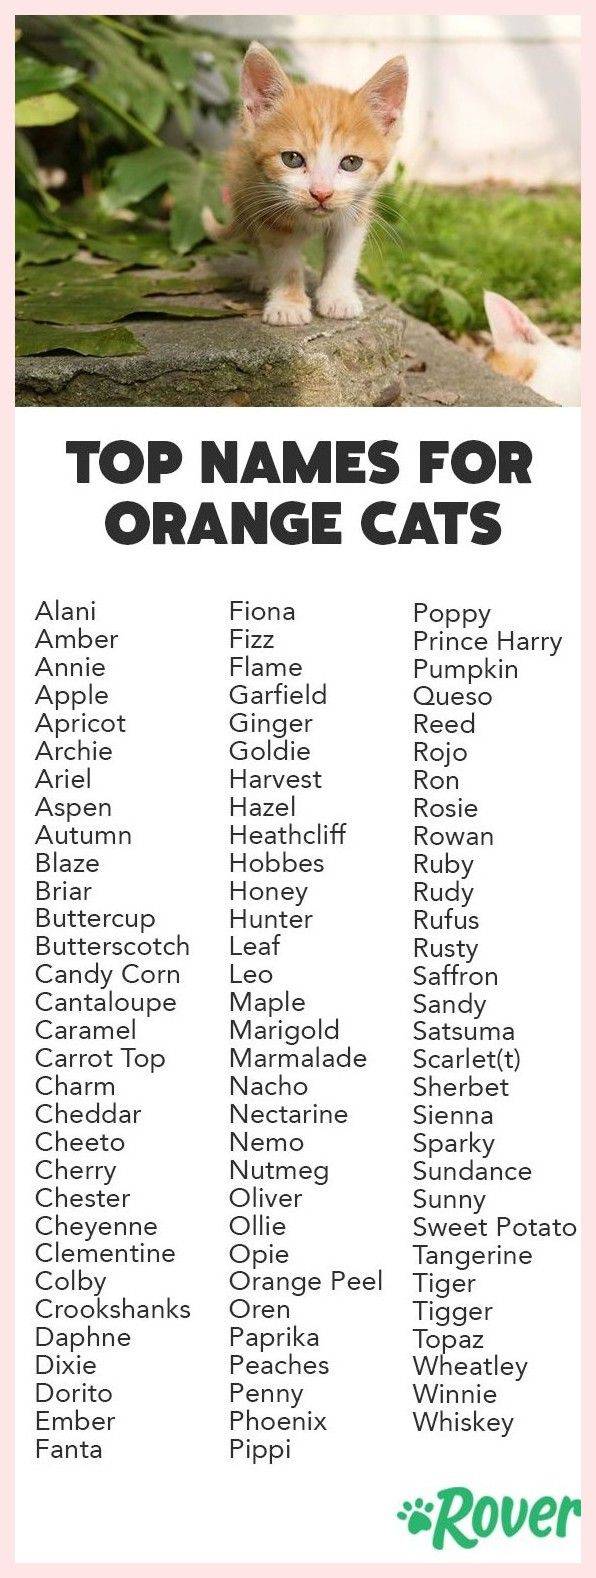 Список имен для британских котов серого цвета